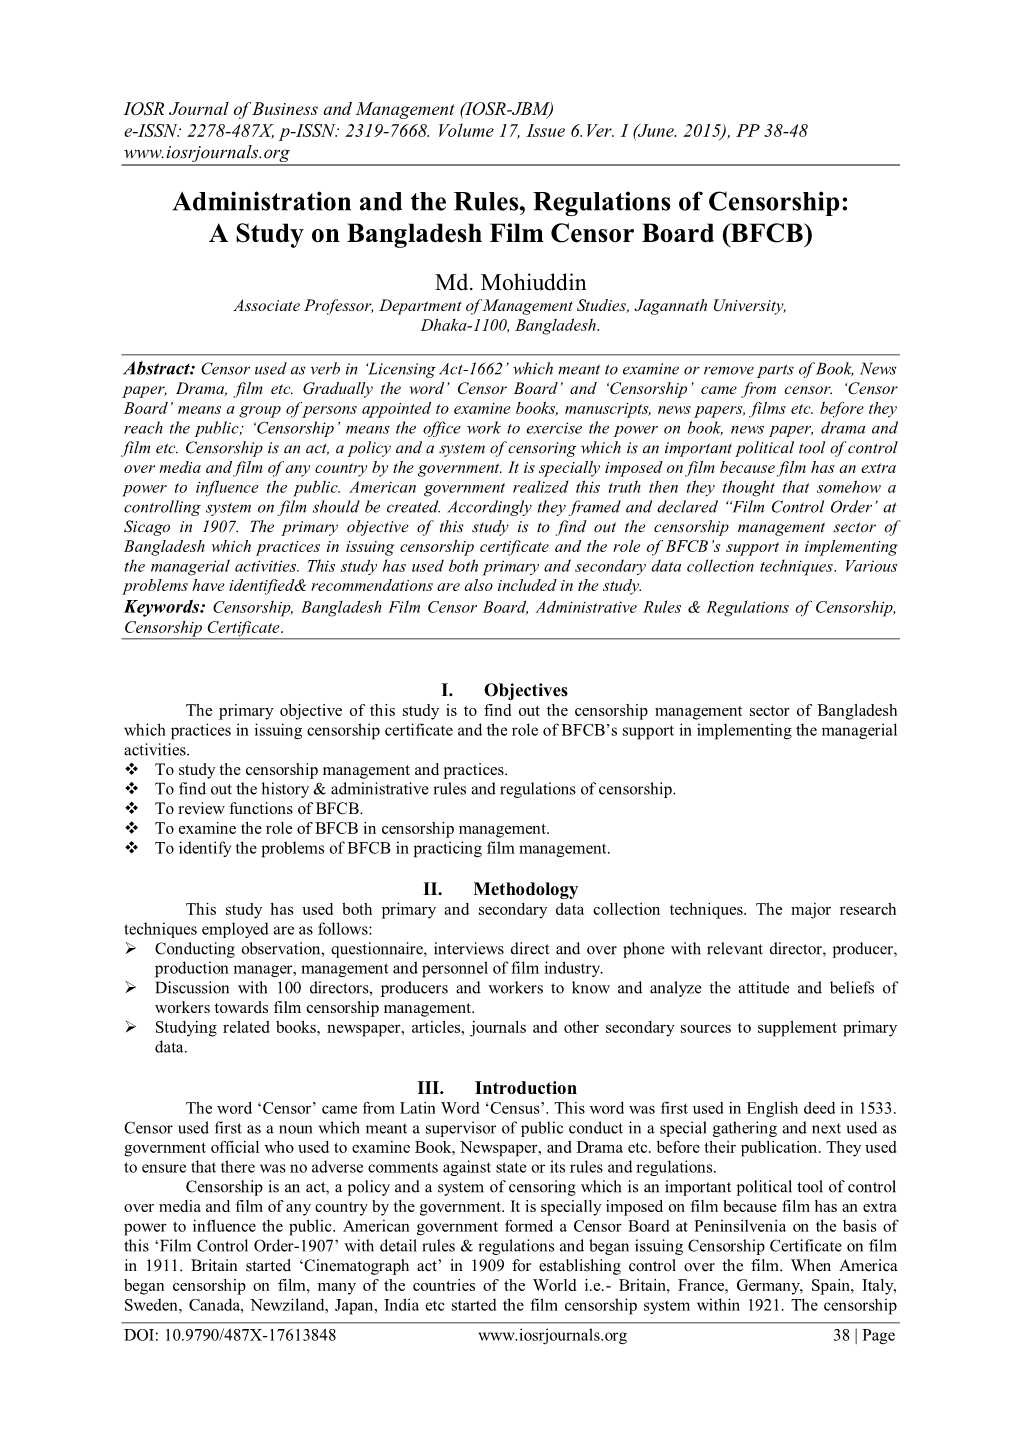 A Study on Bangladesh Film Censor Board (BFCB)